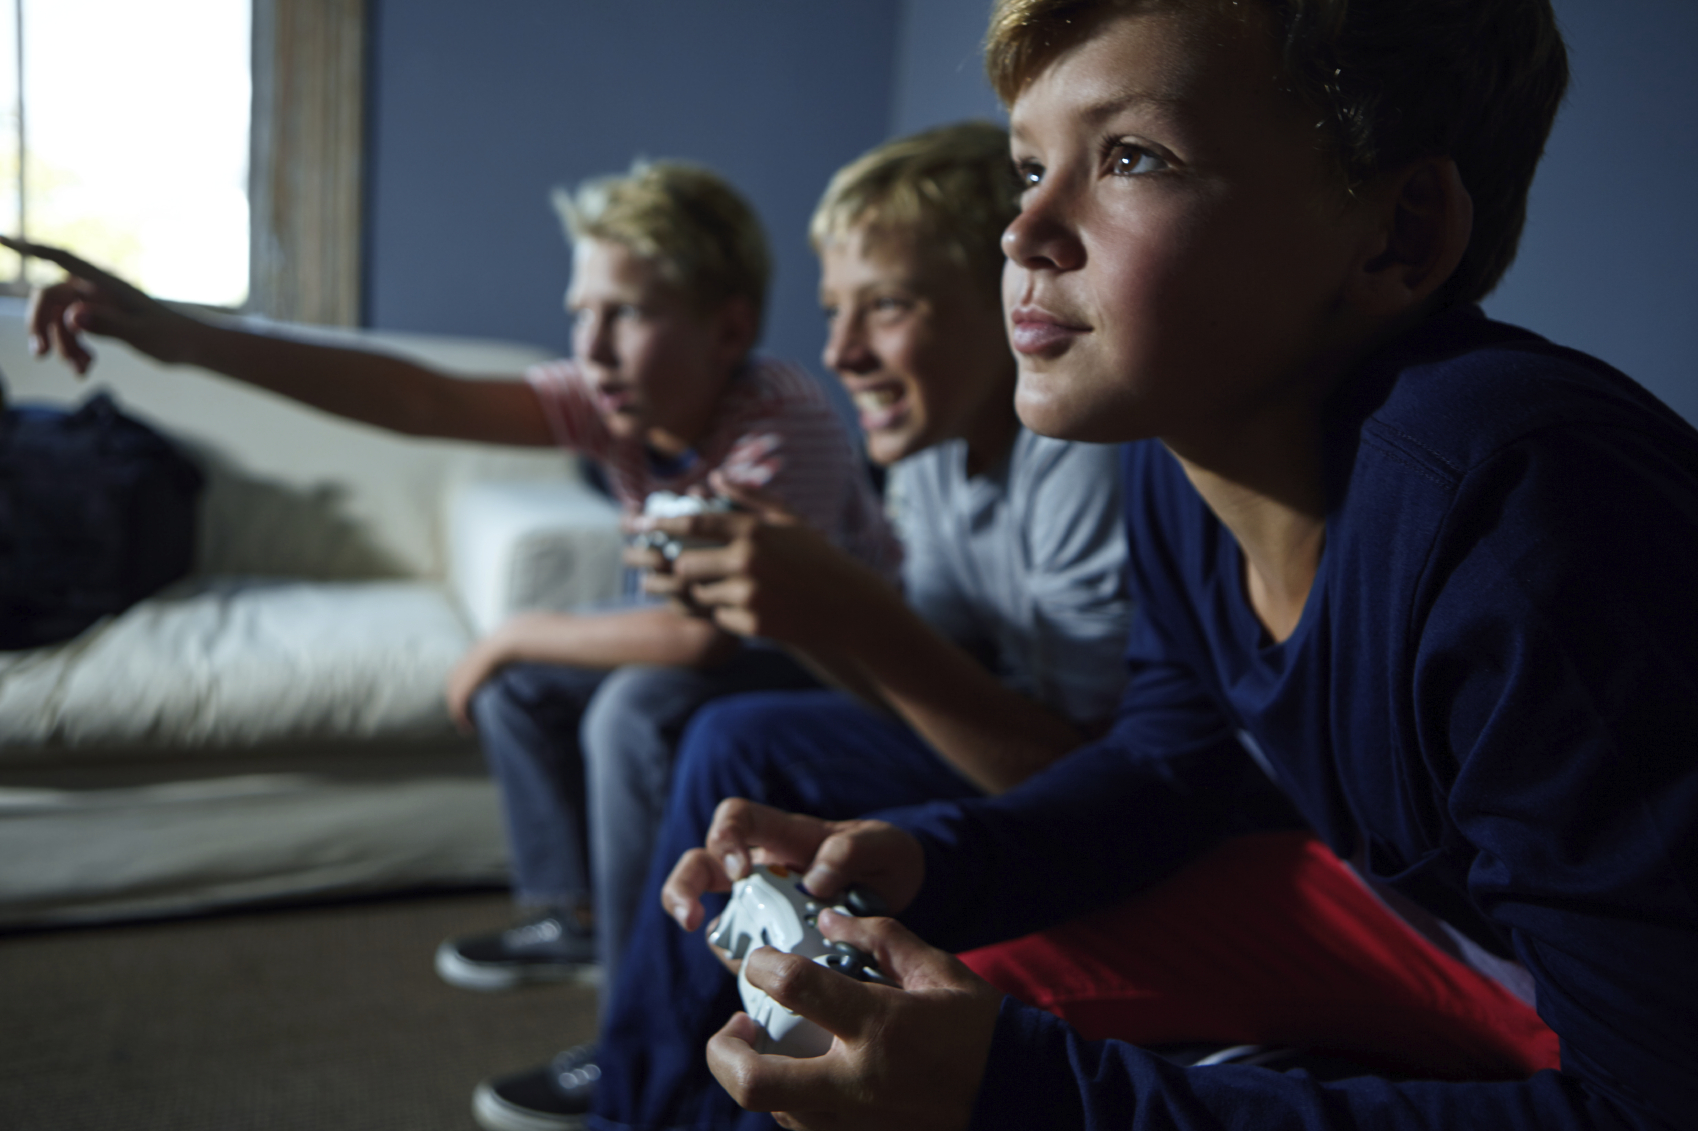 Children & Video Games